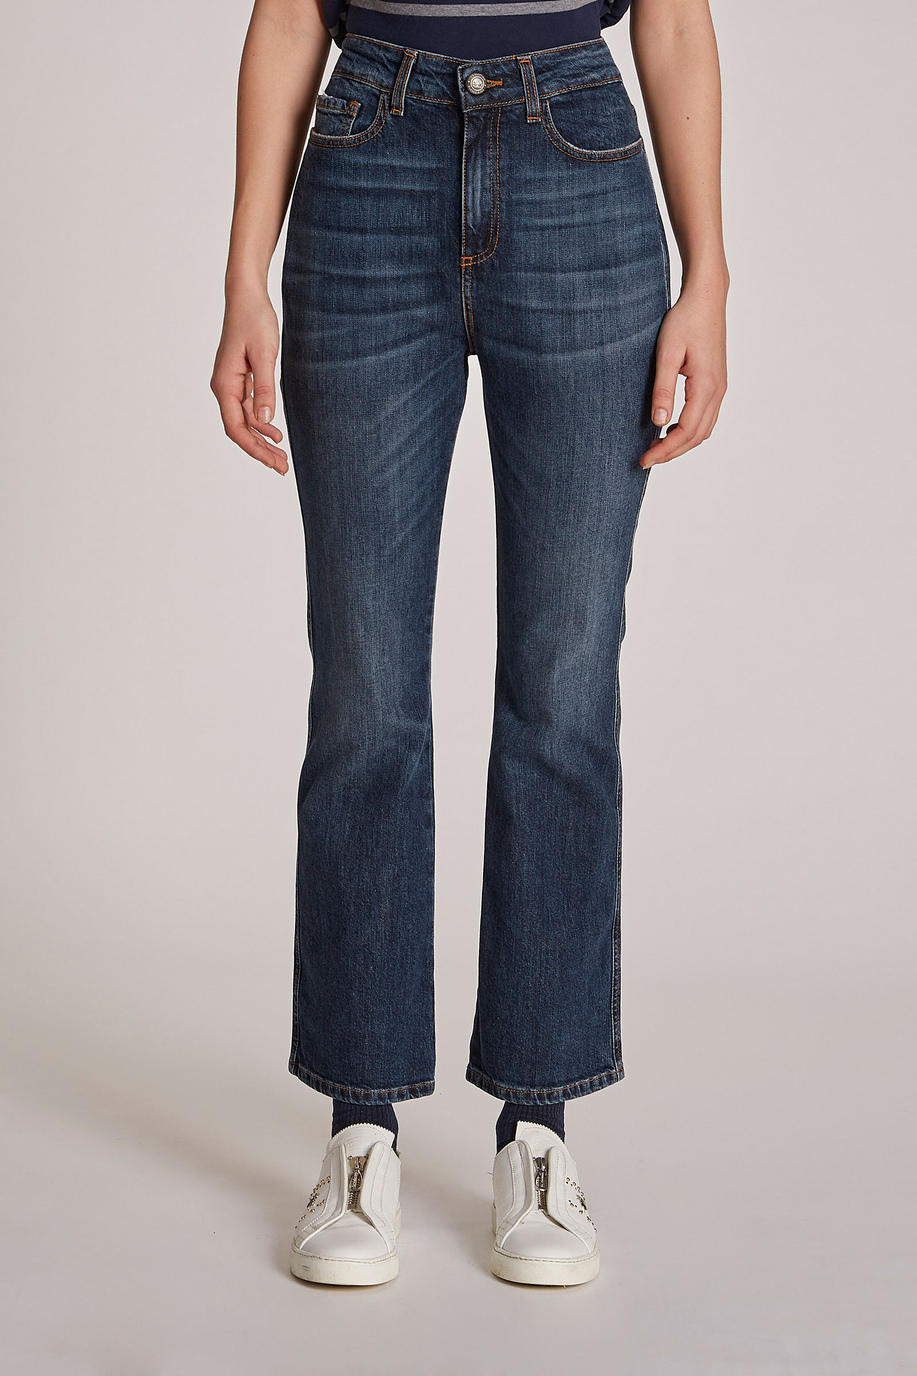 Pantalón de mujer, modelo 5 bolsillos de algodón, corte regular - Preview | La Martina - Official Online Shop